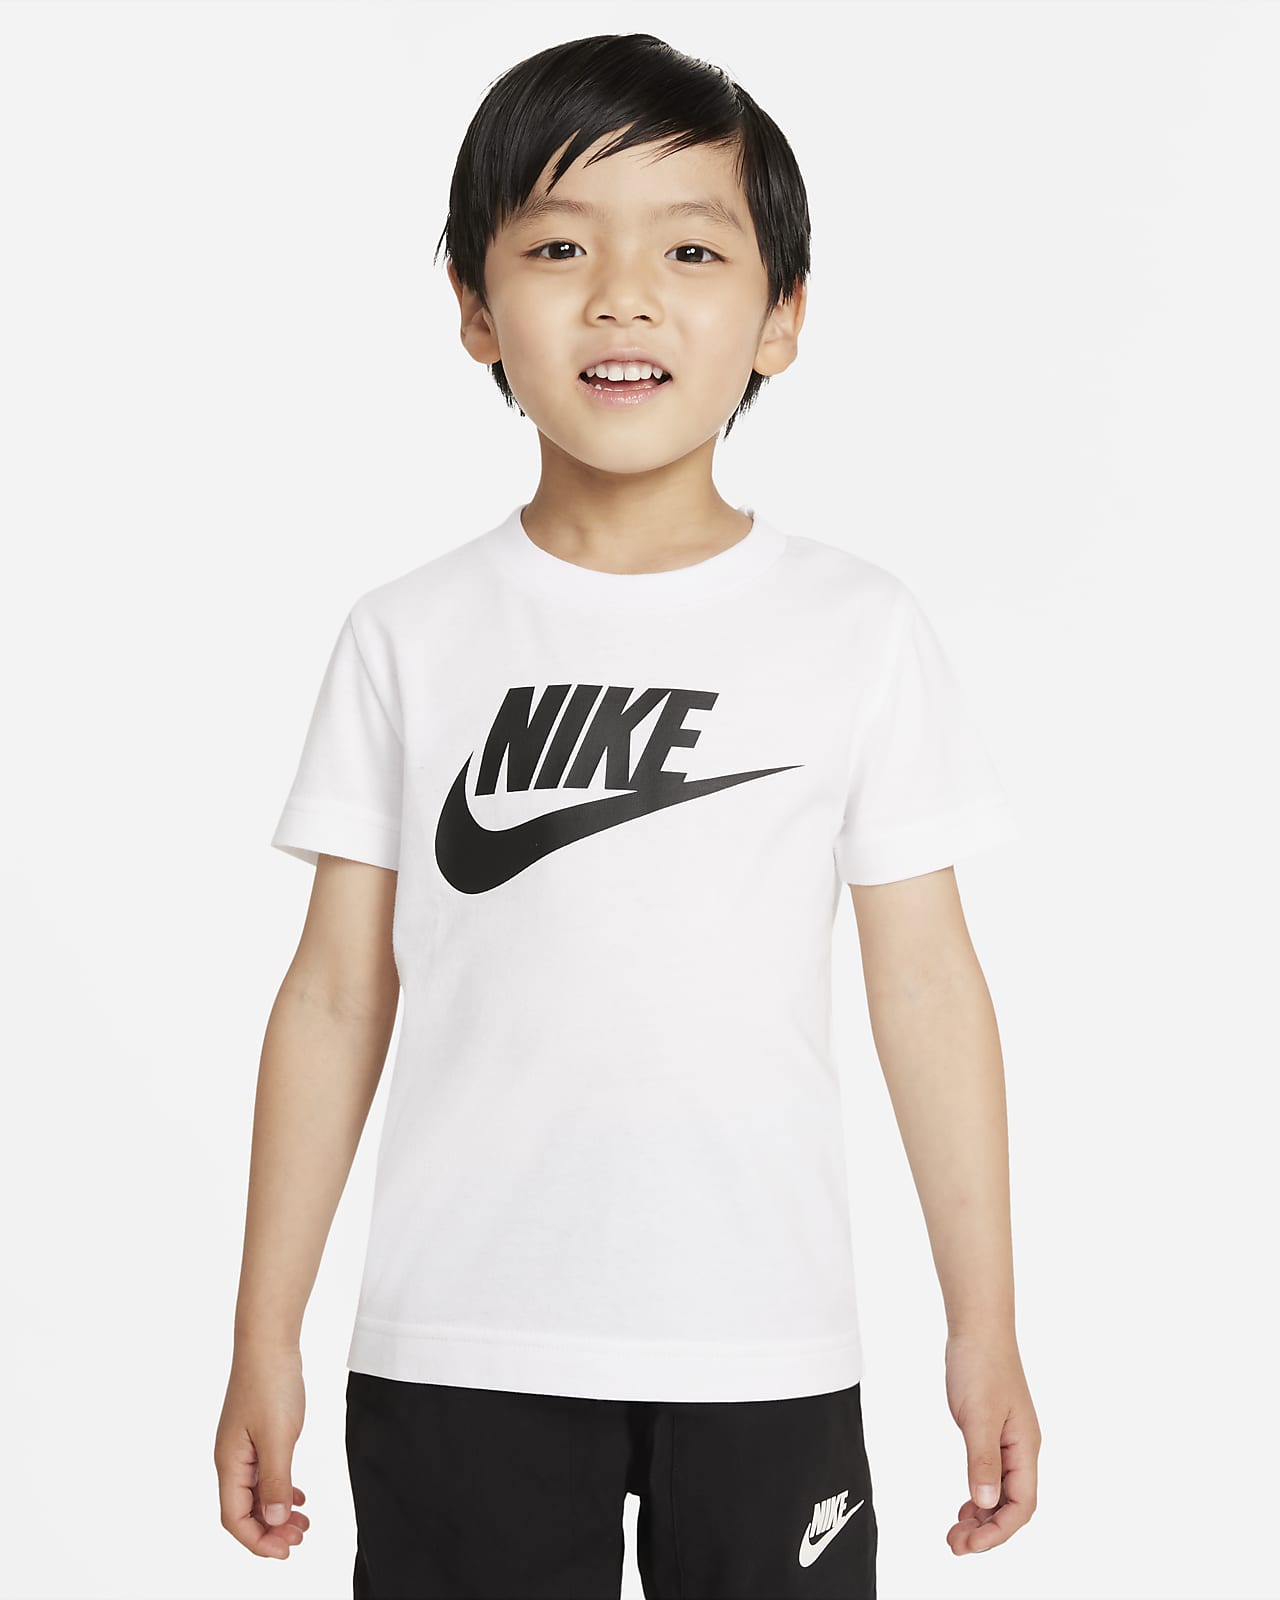 T-shirt Nike - Bimbi piccoli